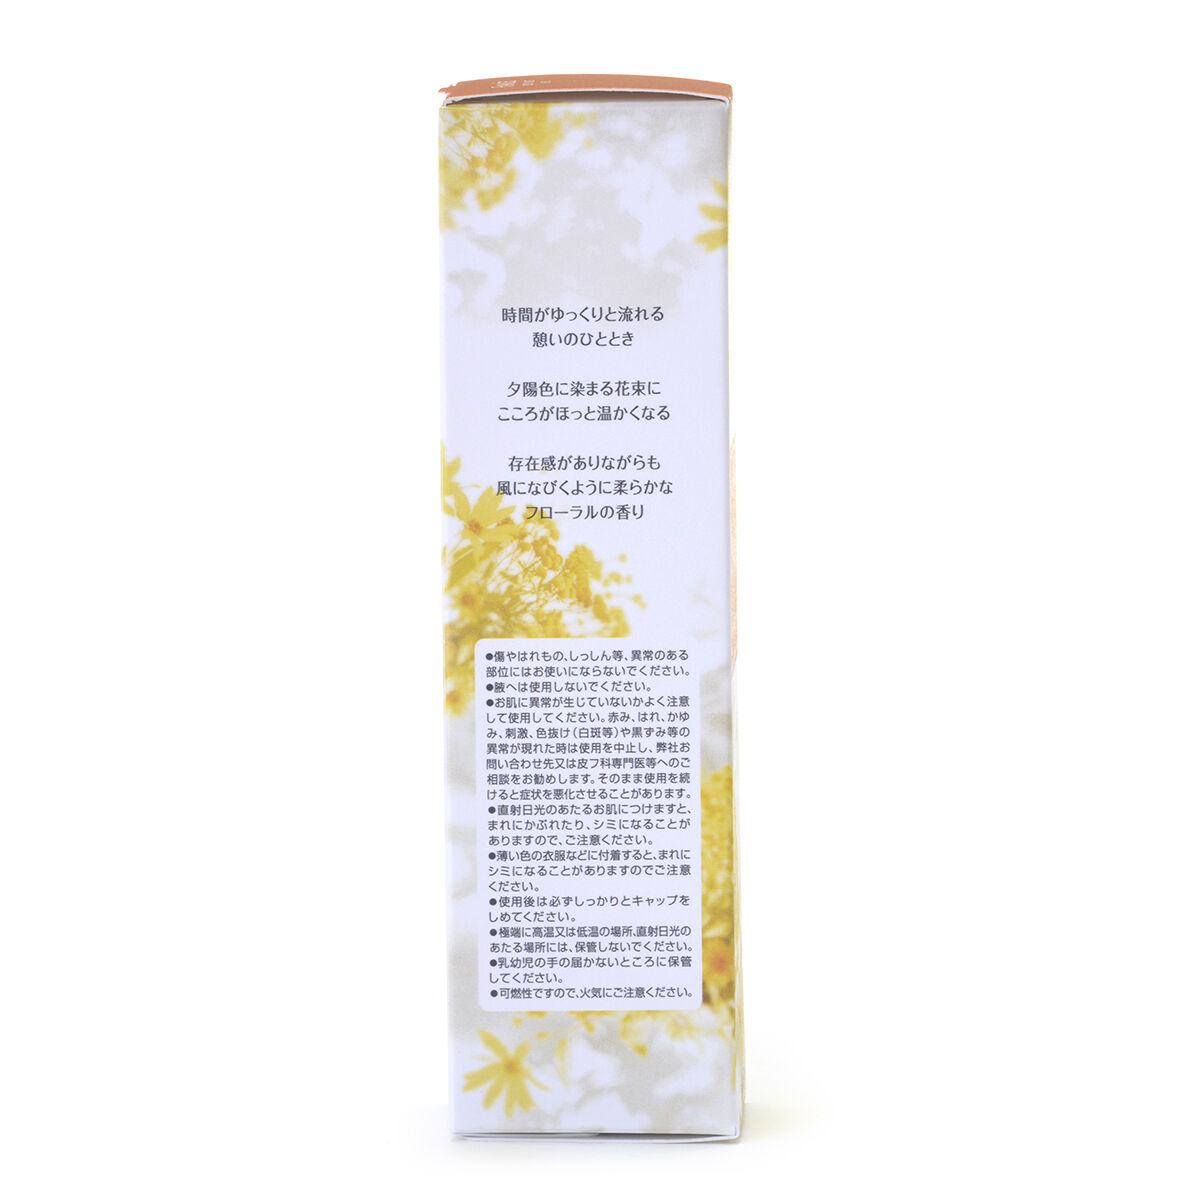 ボディミスト IKOI｜フィアンセの口コミ #キンモクセイの香り フィアンセ by yuna(乾燥肌) LIPS